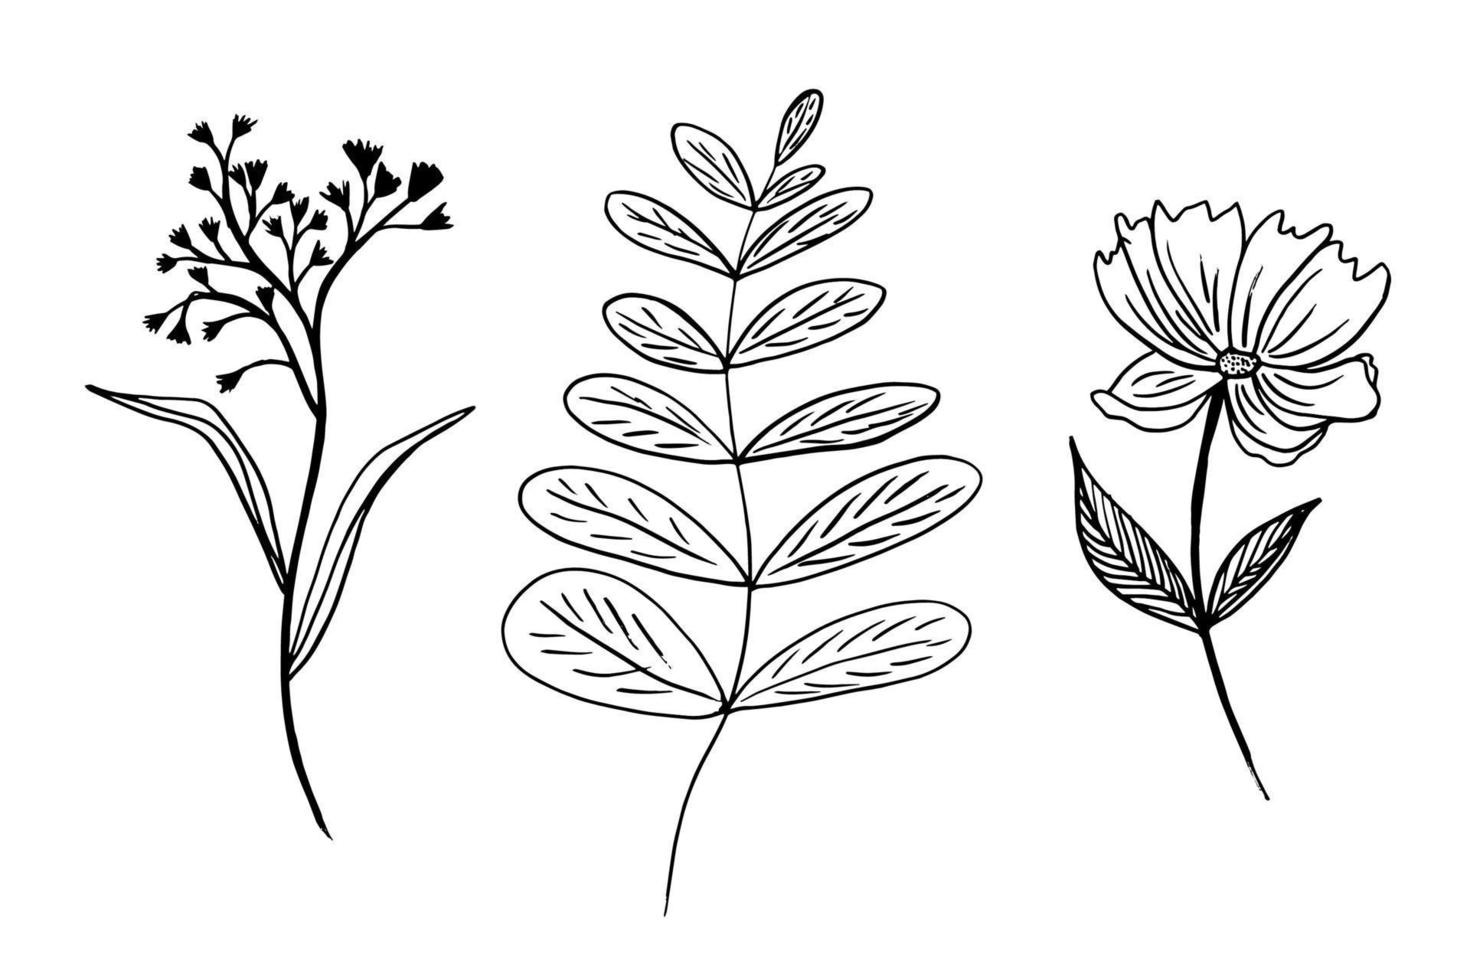 florales handgezeichnetes set. vektorillustration von blumen und zweigen mit blättern mit einem schwarzen stift und lokalisiert auf weiß. Umrisszeichnung von fantastischen nicht existierenden Pflanzen vektor